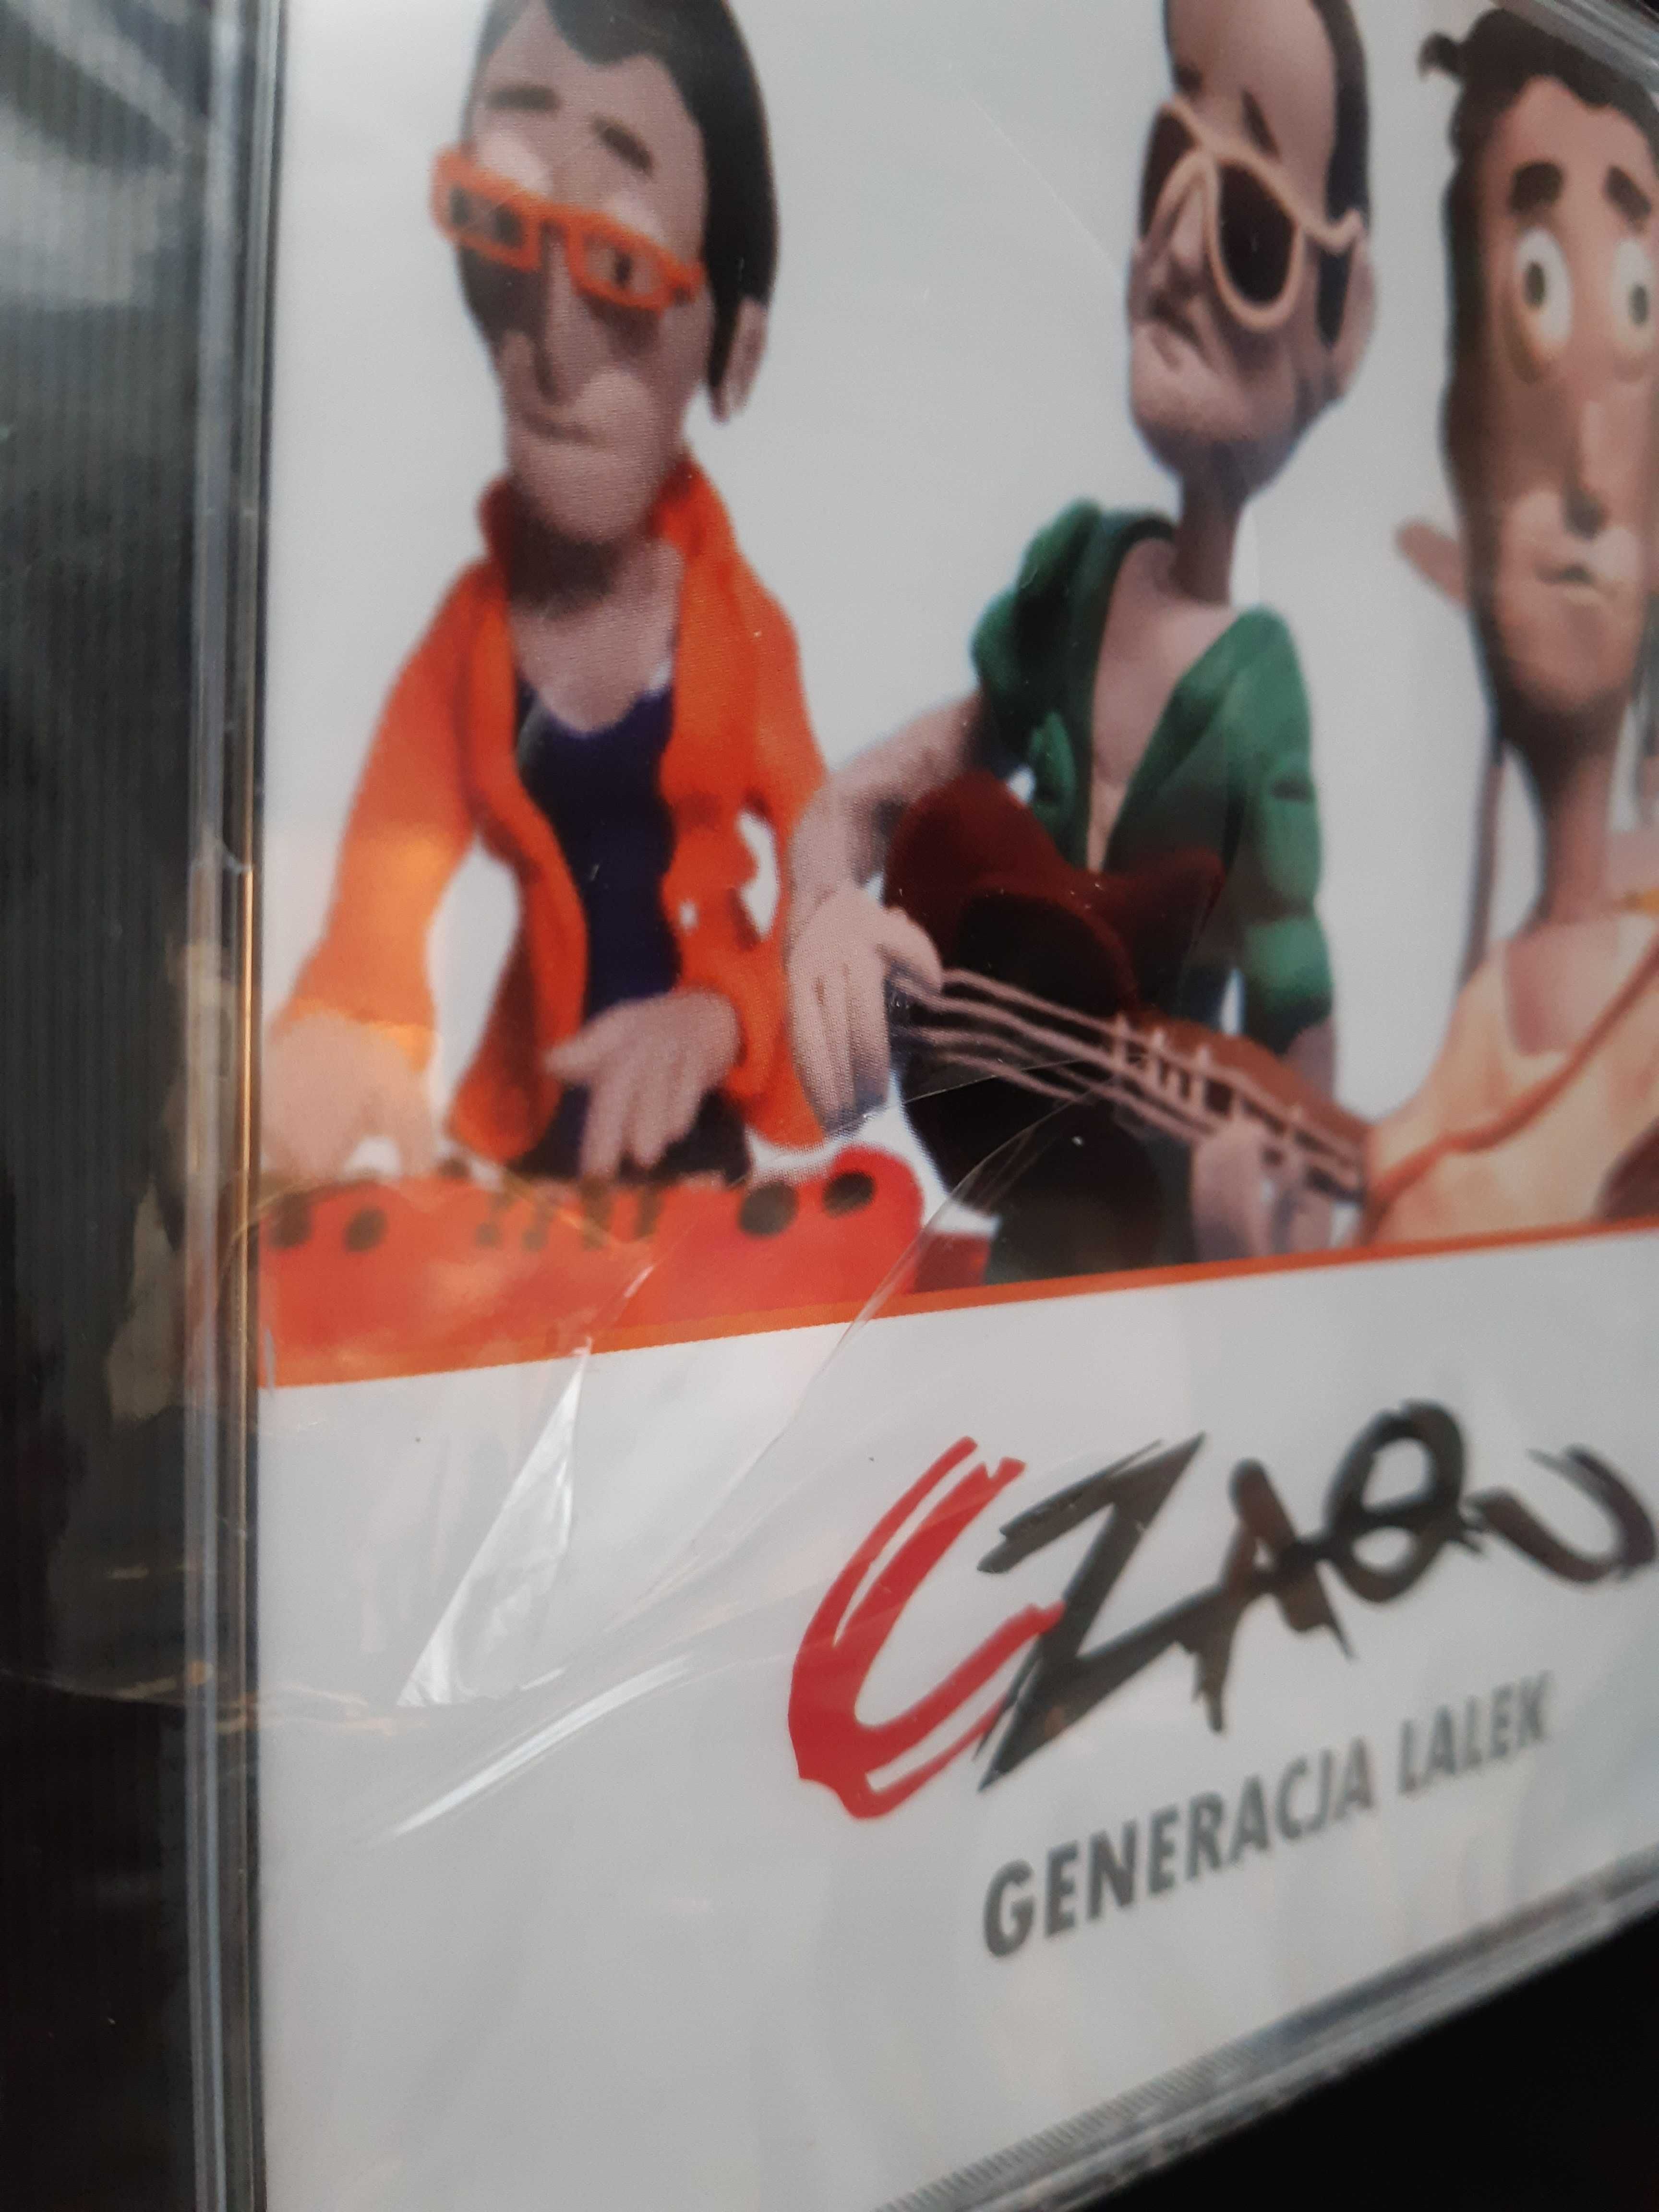 CD Czaqu - Generacja lalek